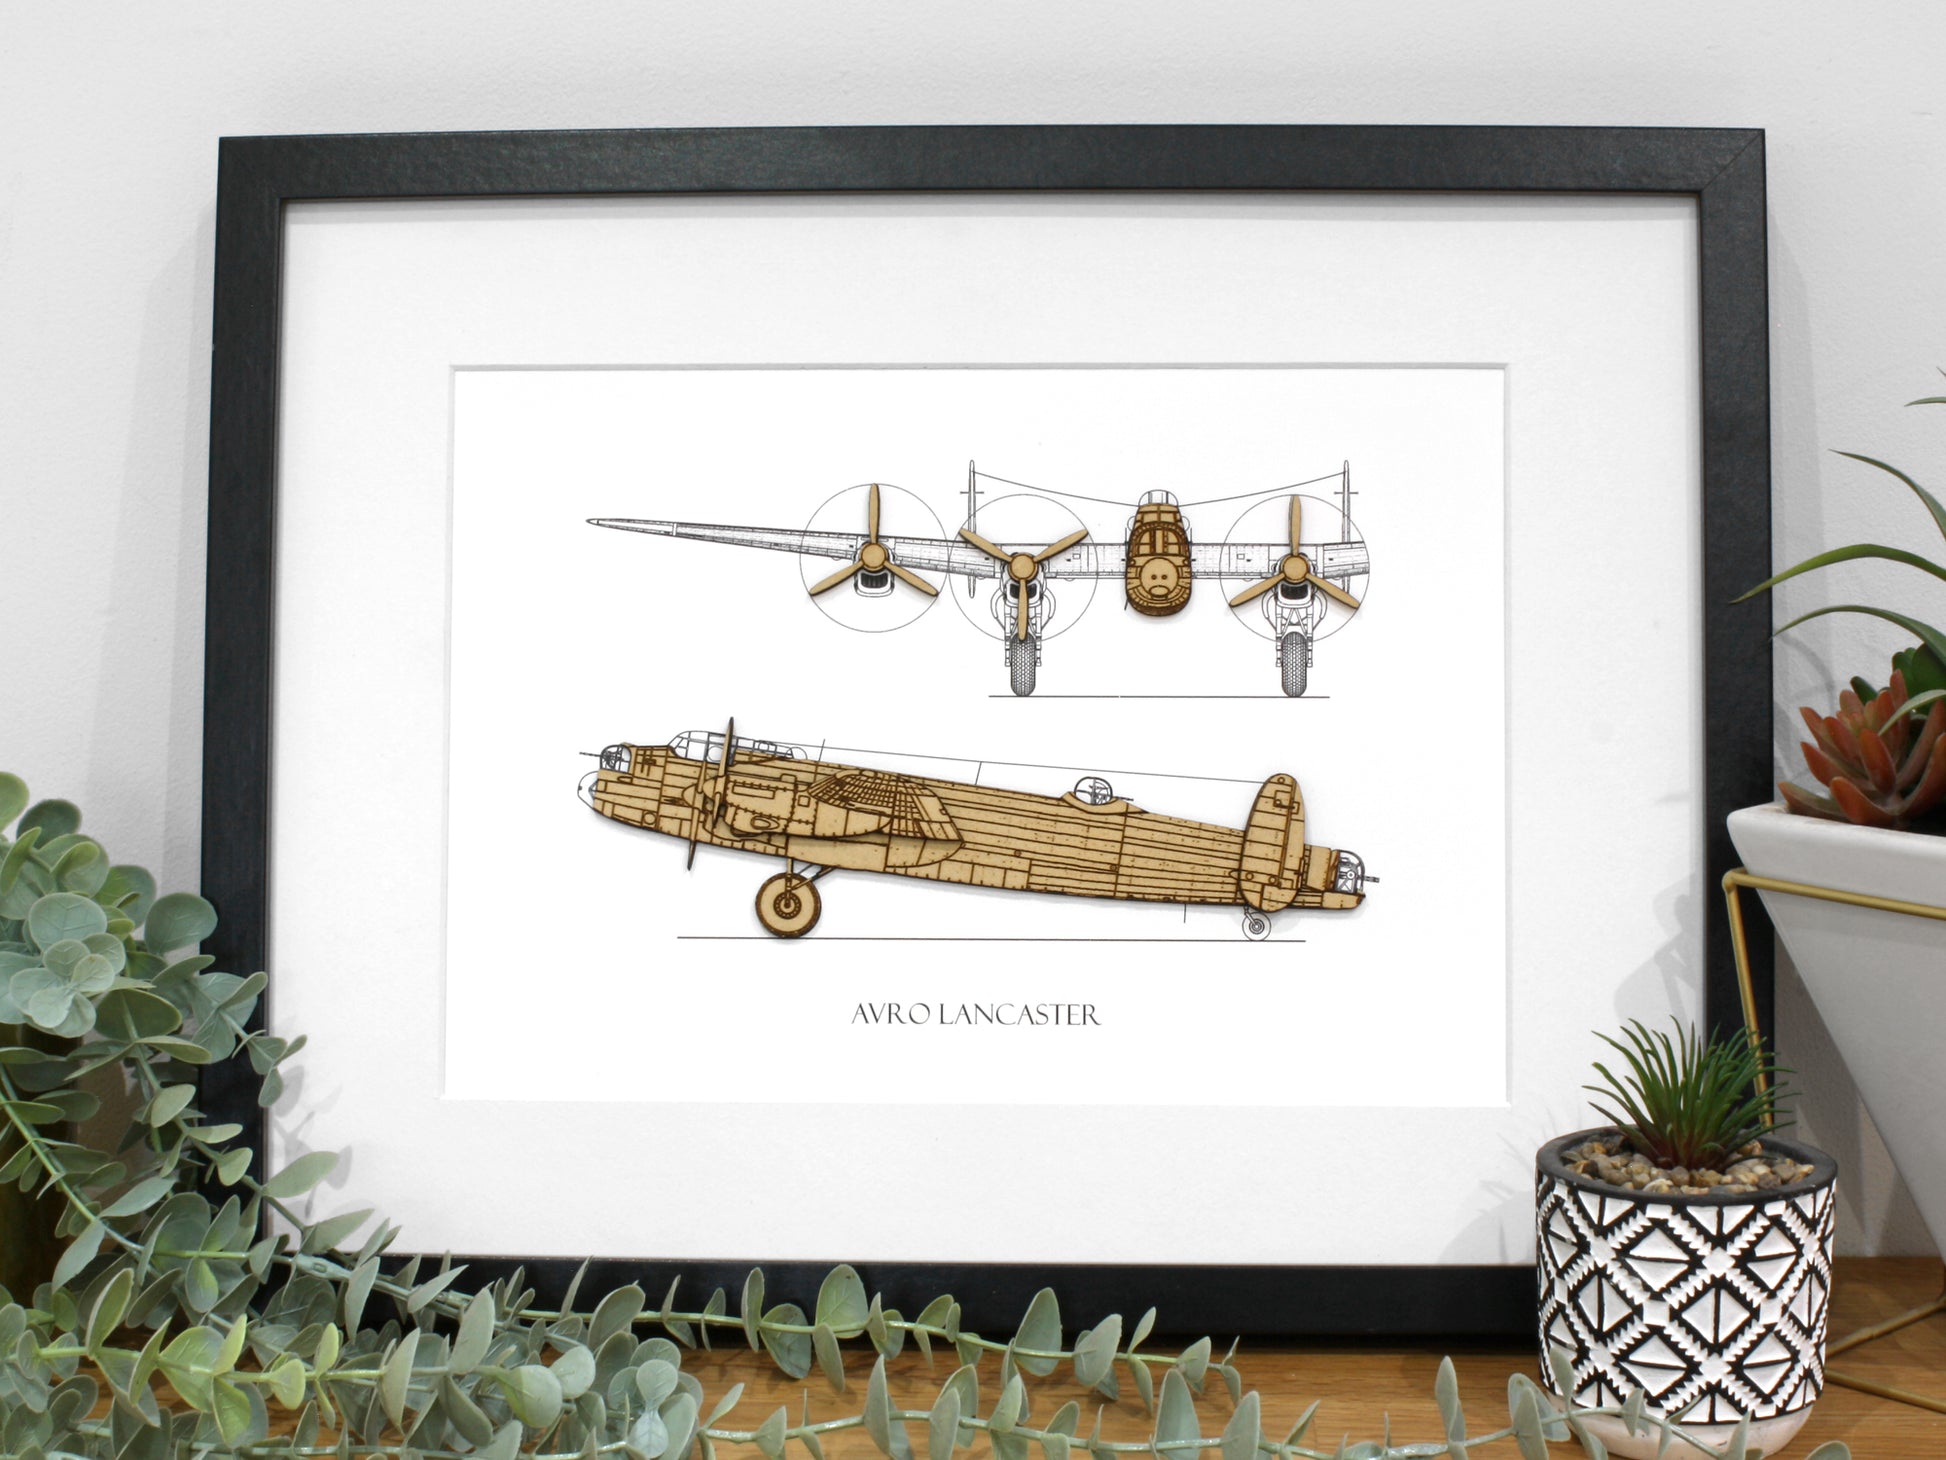 Avro Lancaster aviation gift